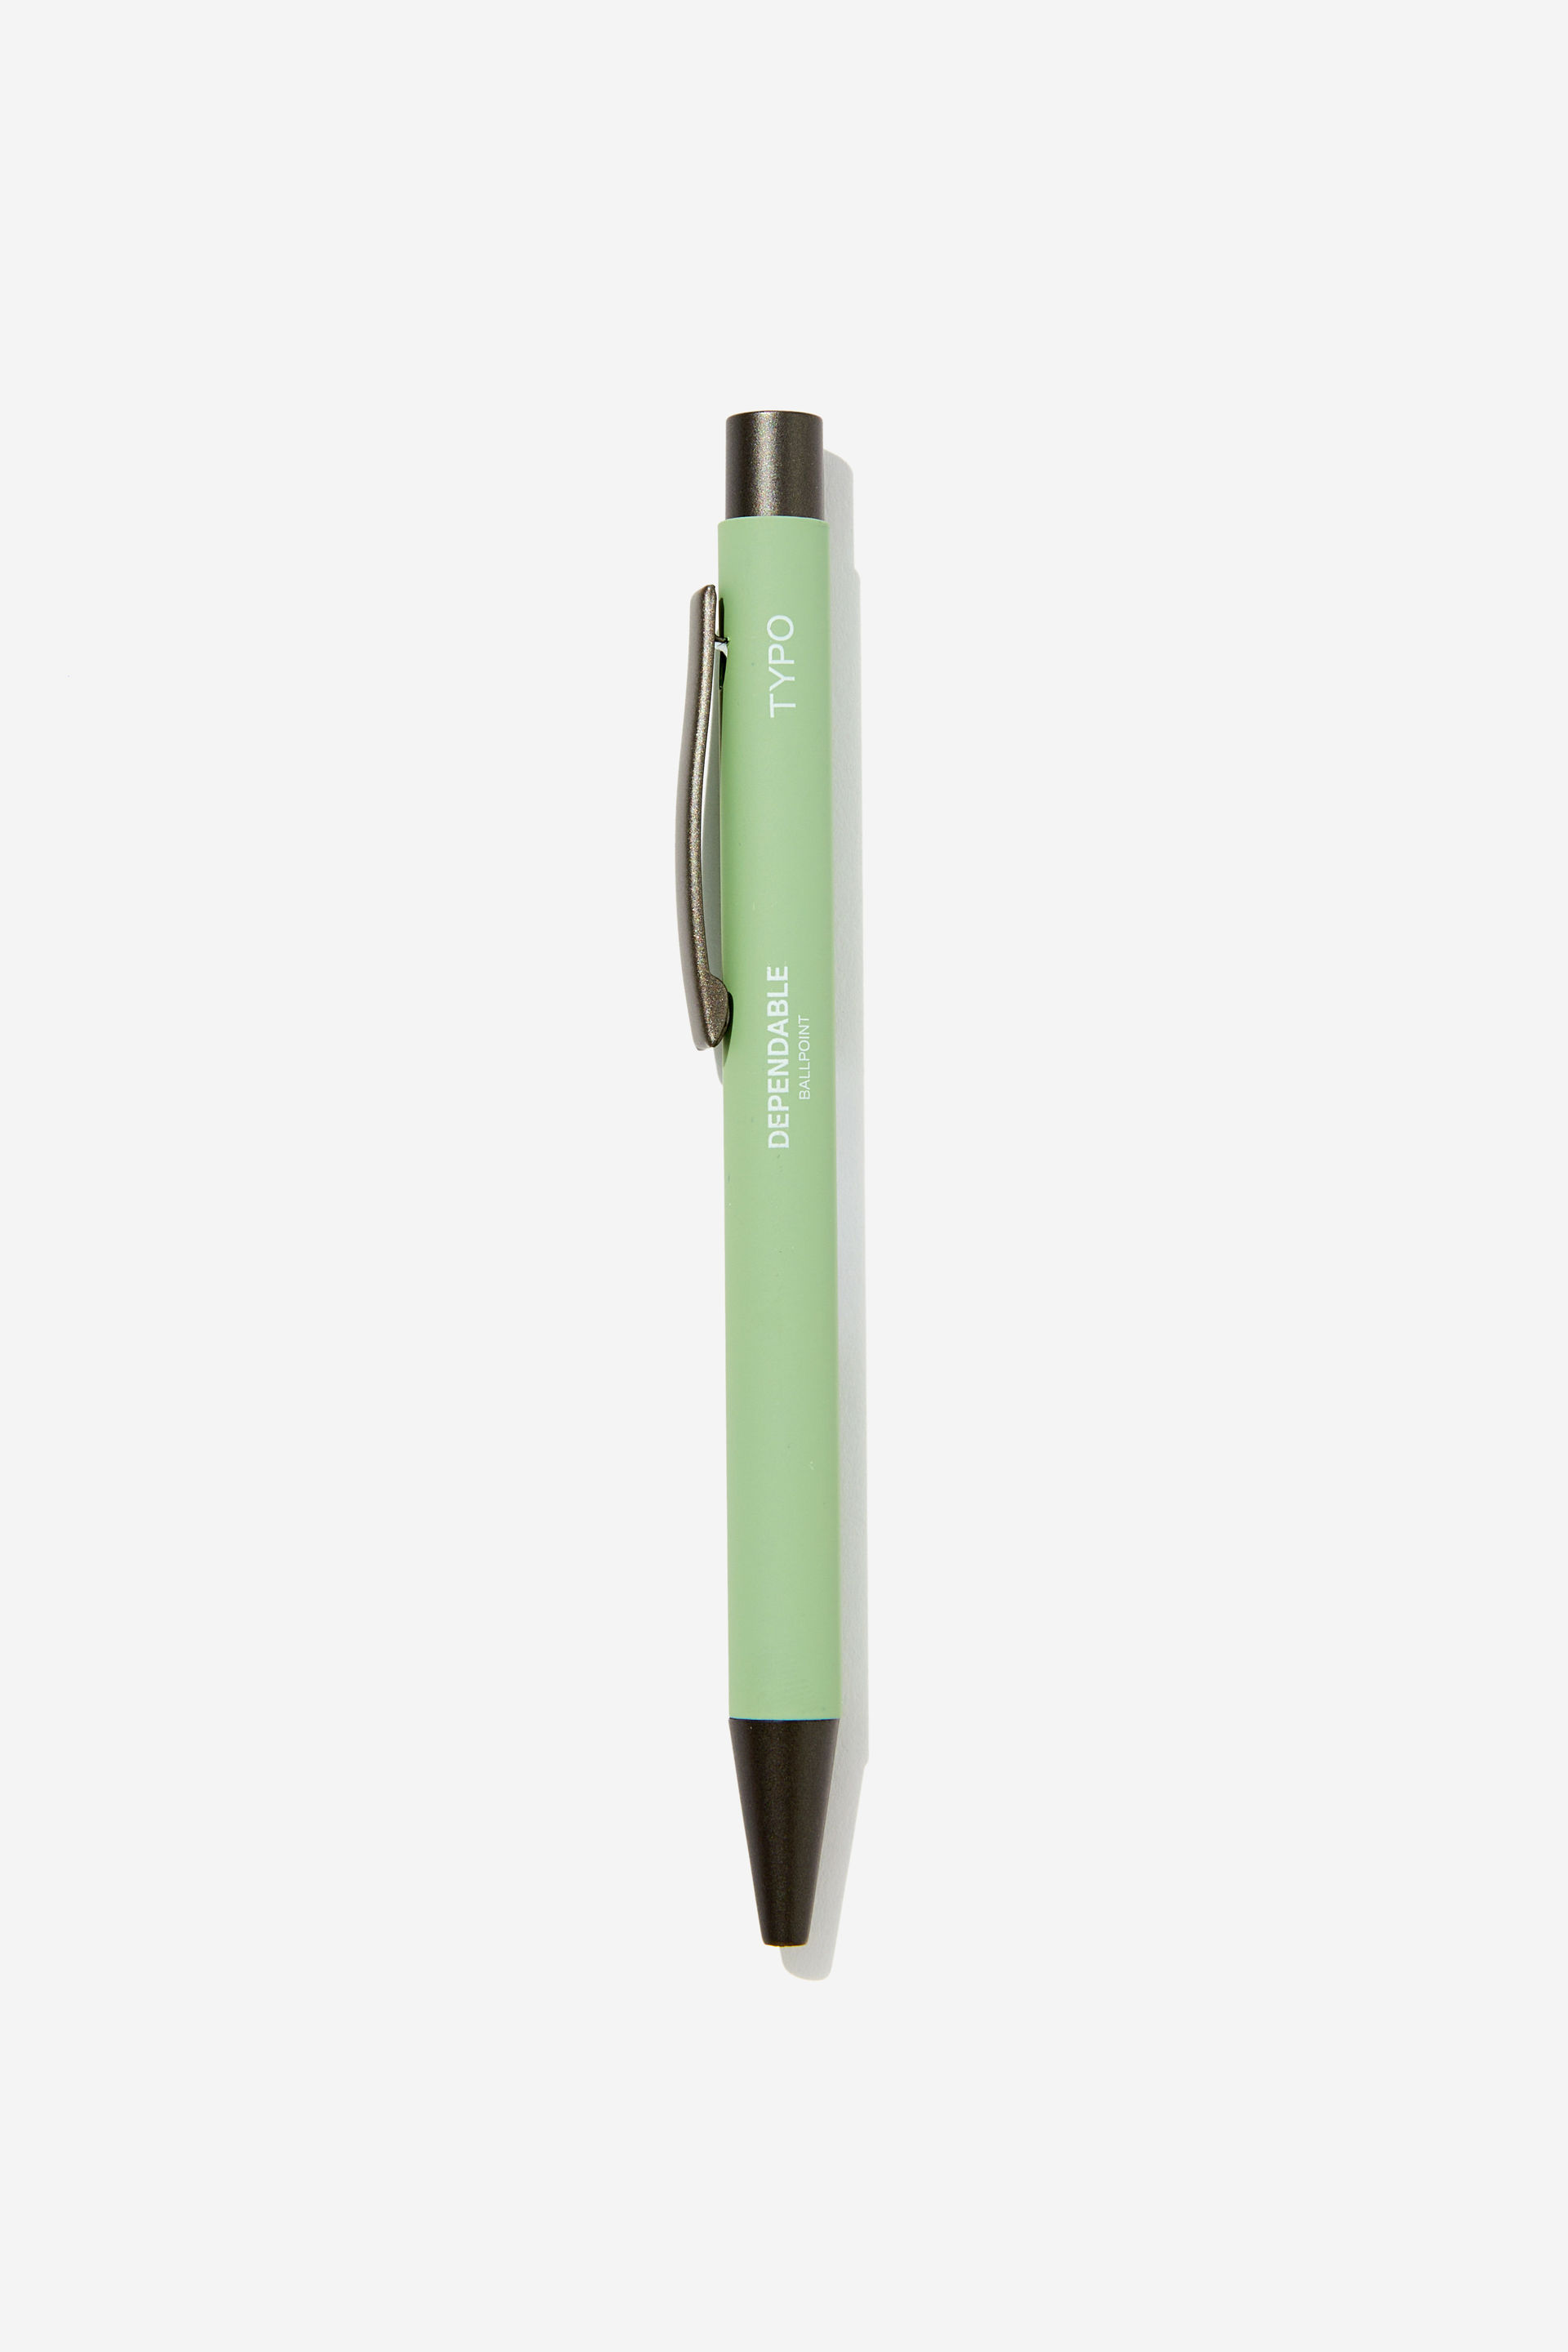 Typo - Dependable Ballpoint Pen - Smoke green